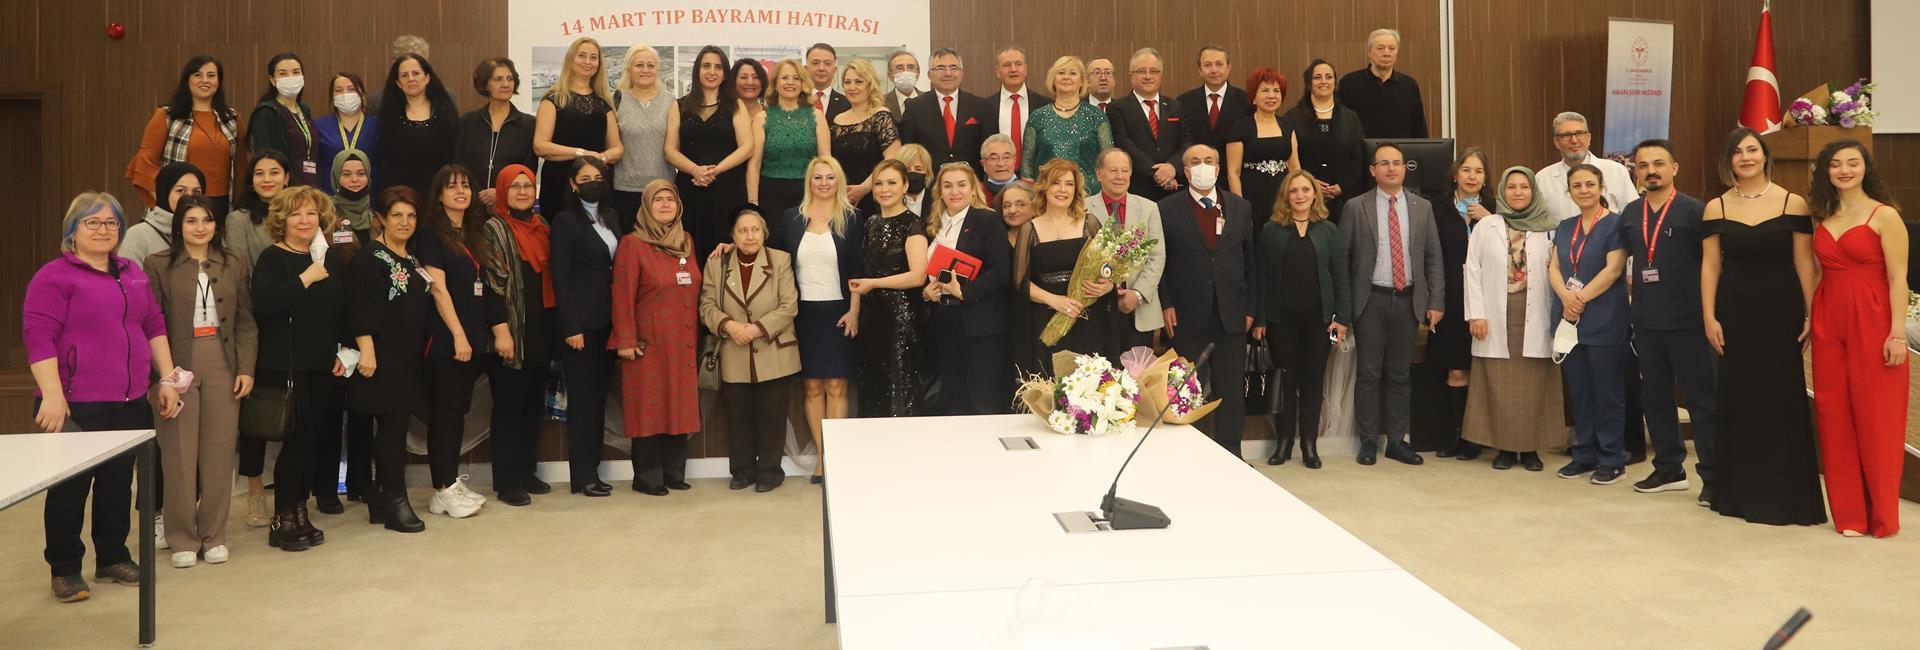 14 марта сотрудники Городской больницы Анкары отметили День Медицины, как члены одной семьи, исполненные чувства единства и солидарности.